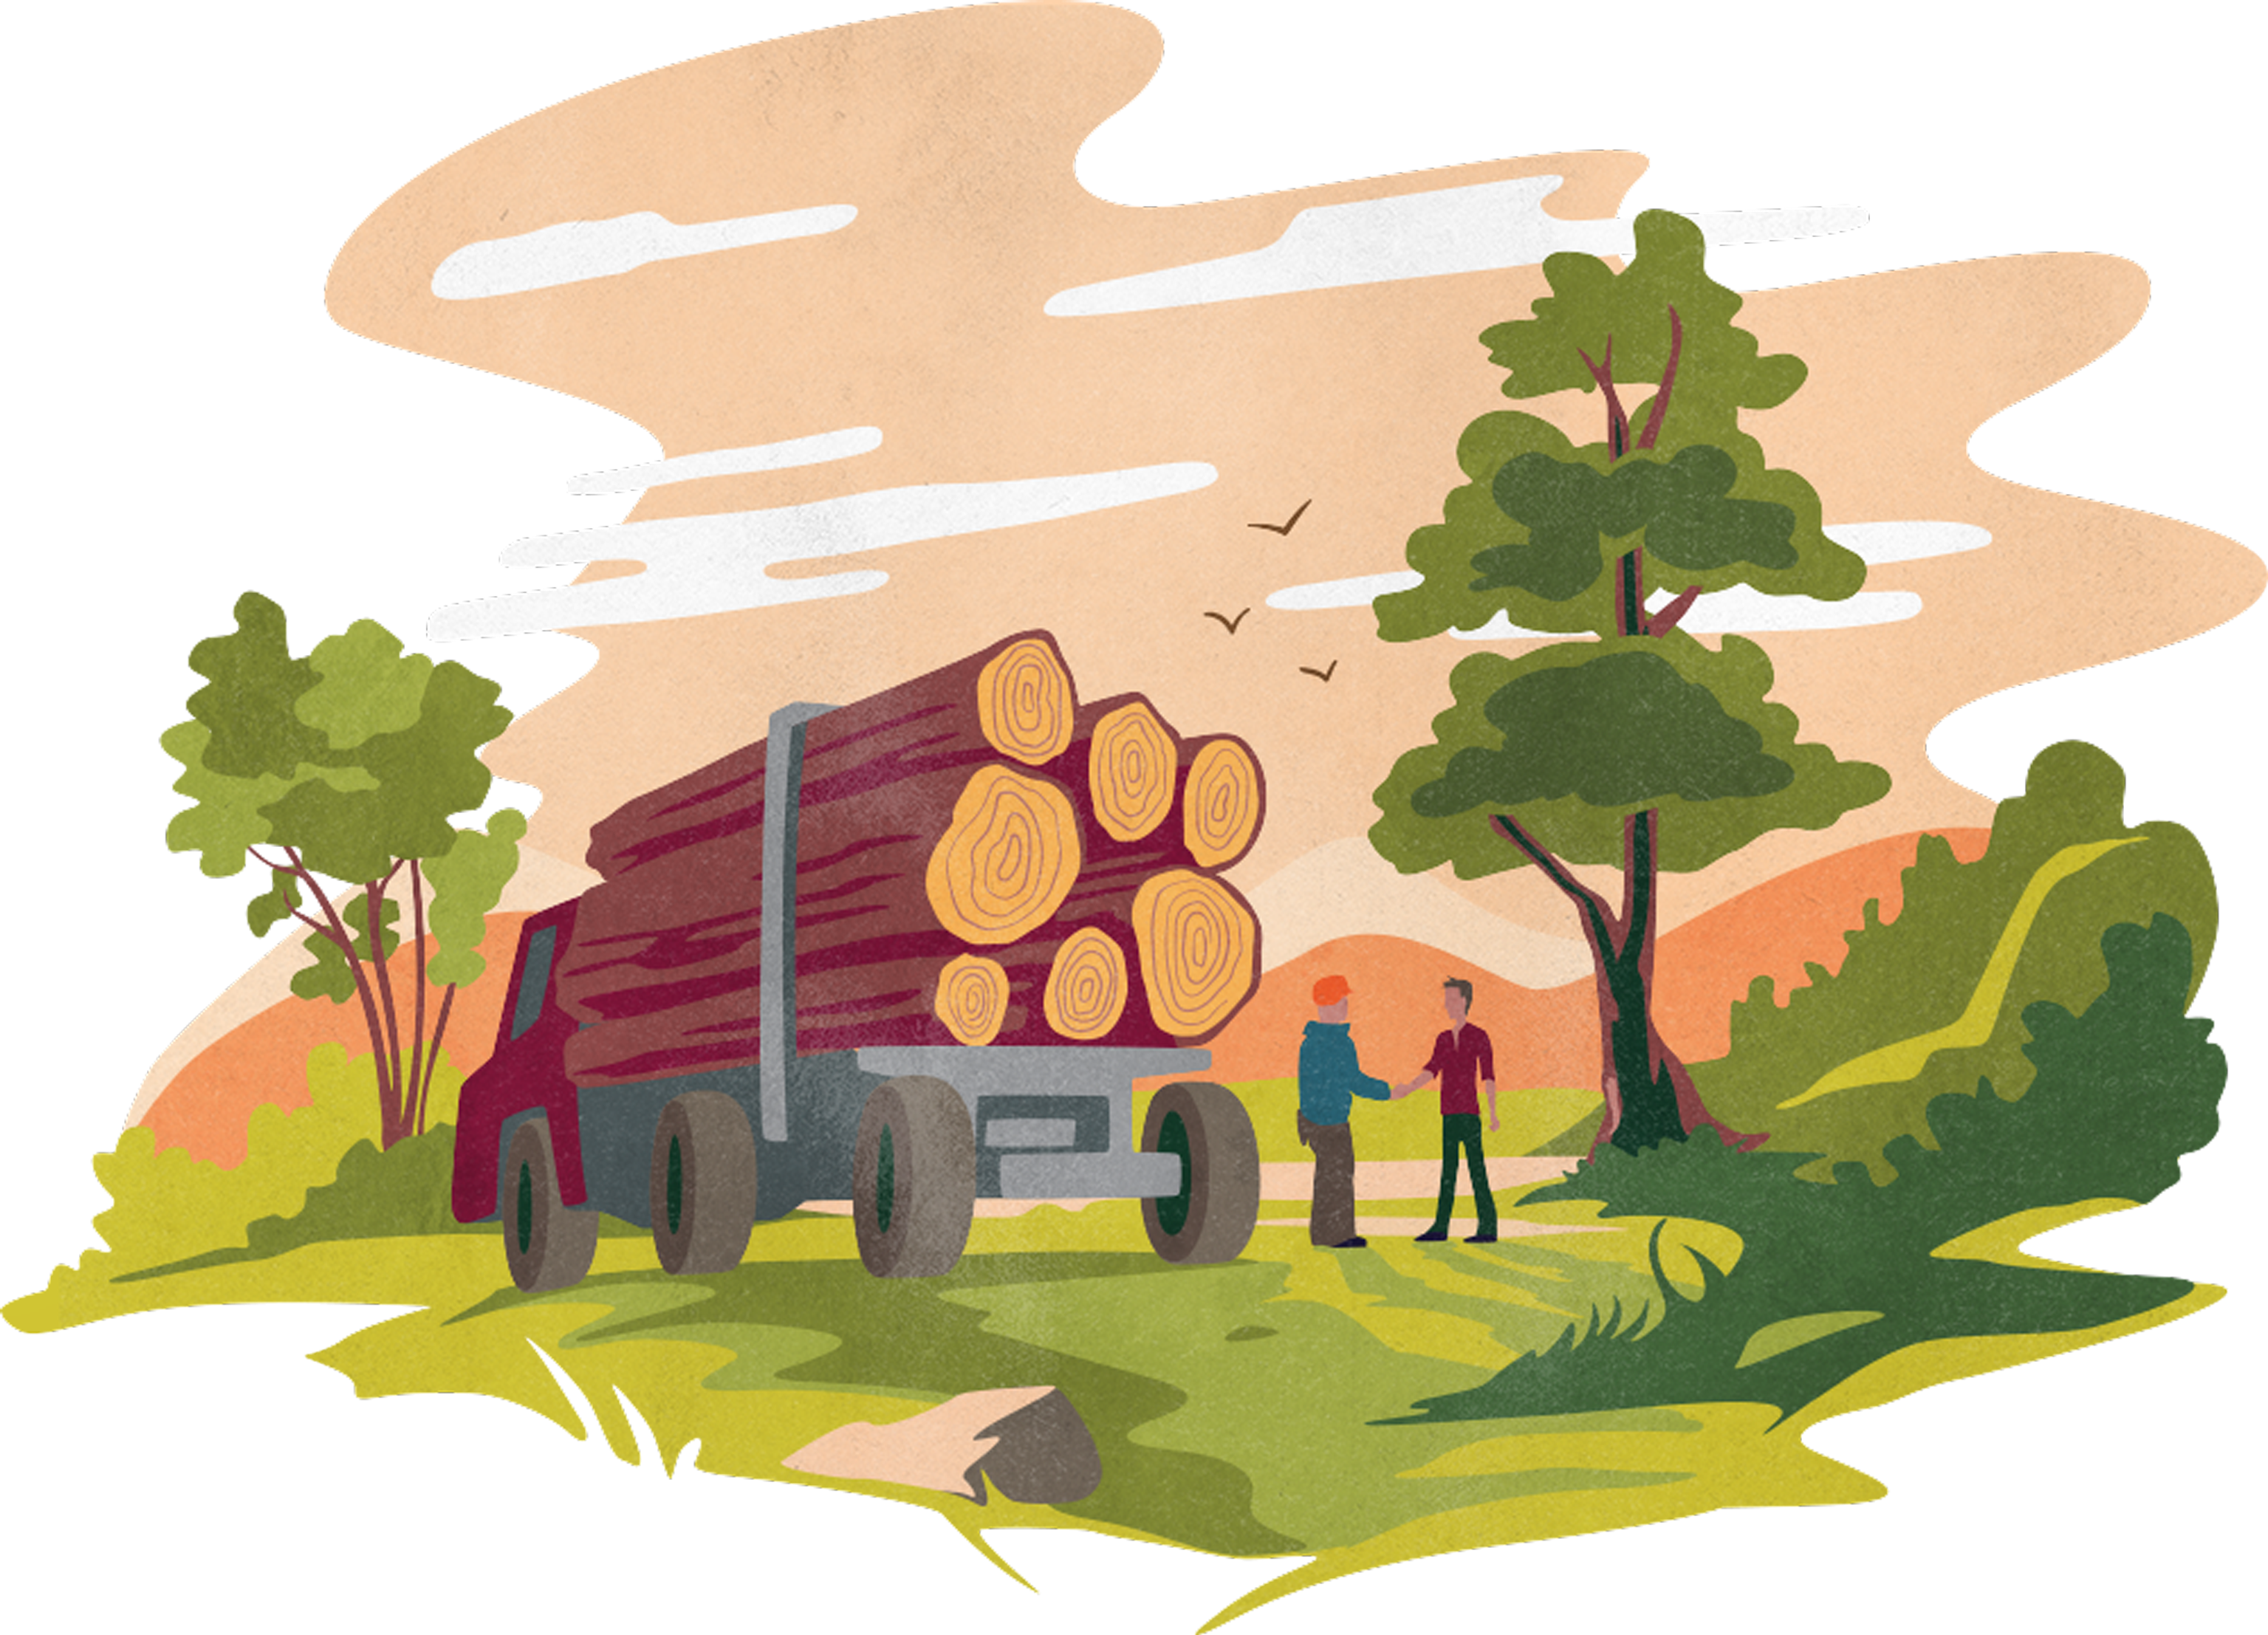 Timer Market logging illustration by Function & Form